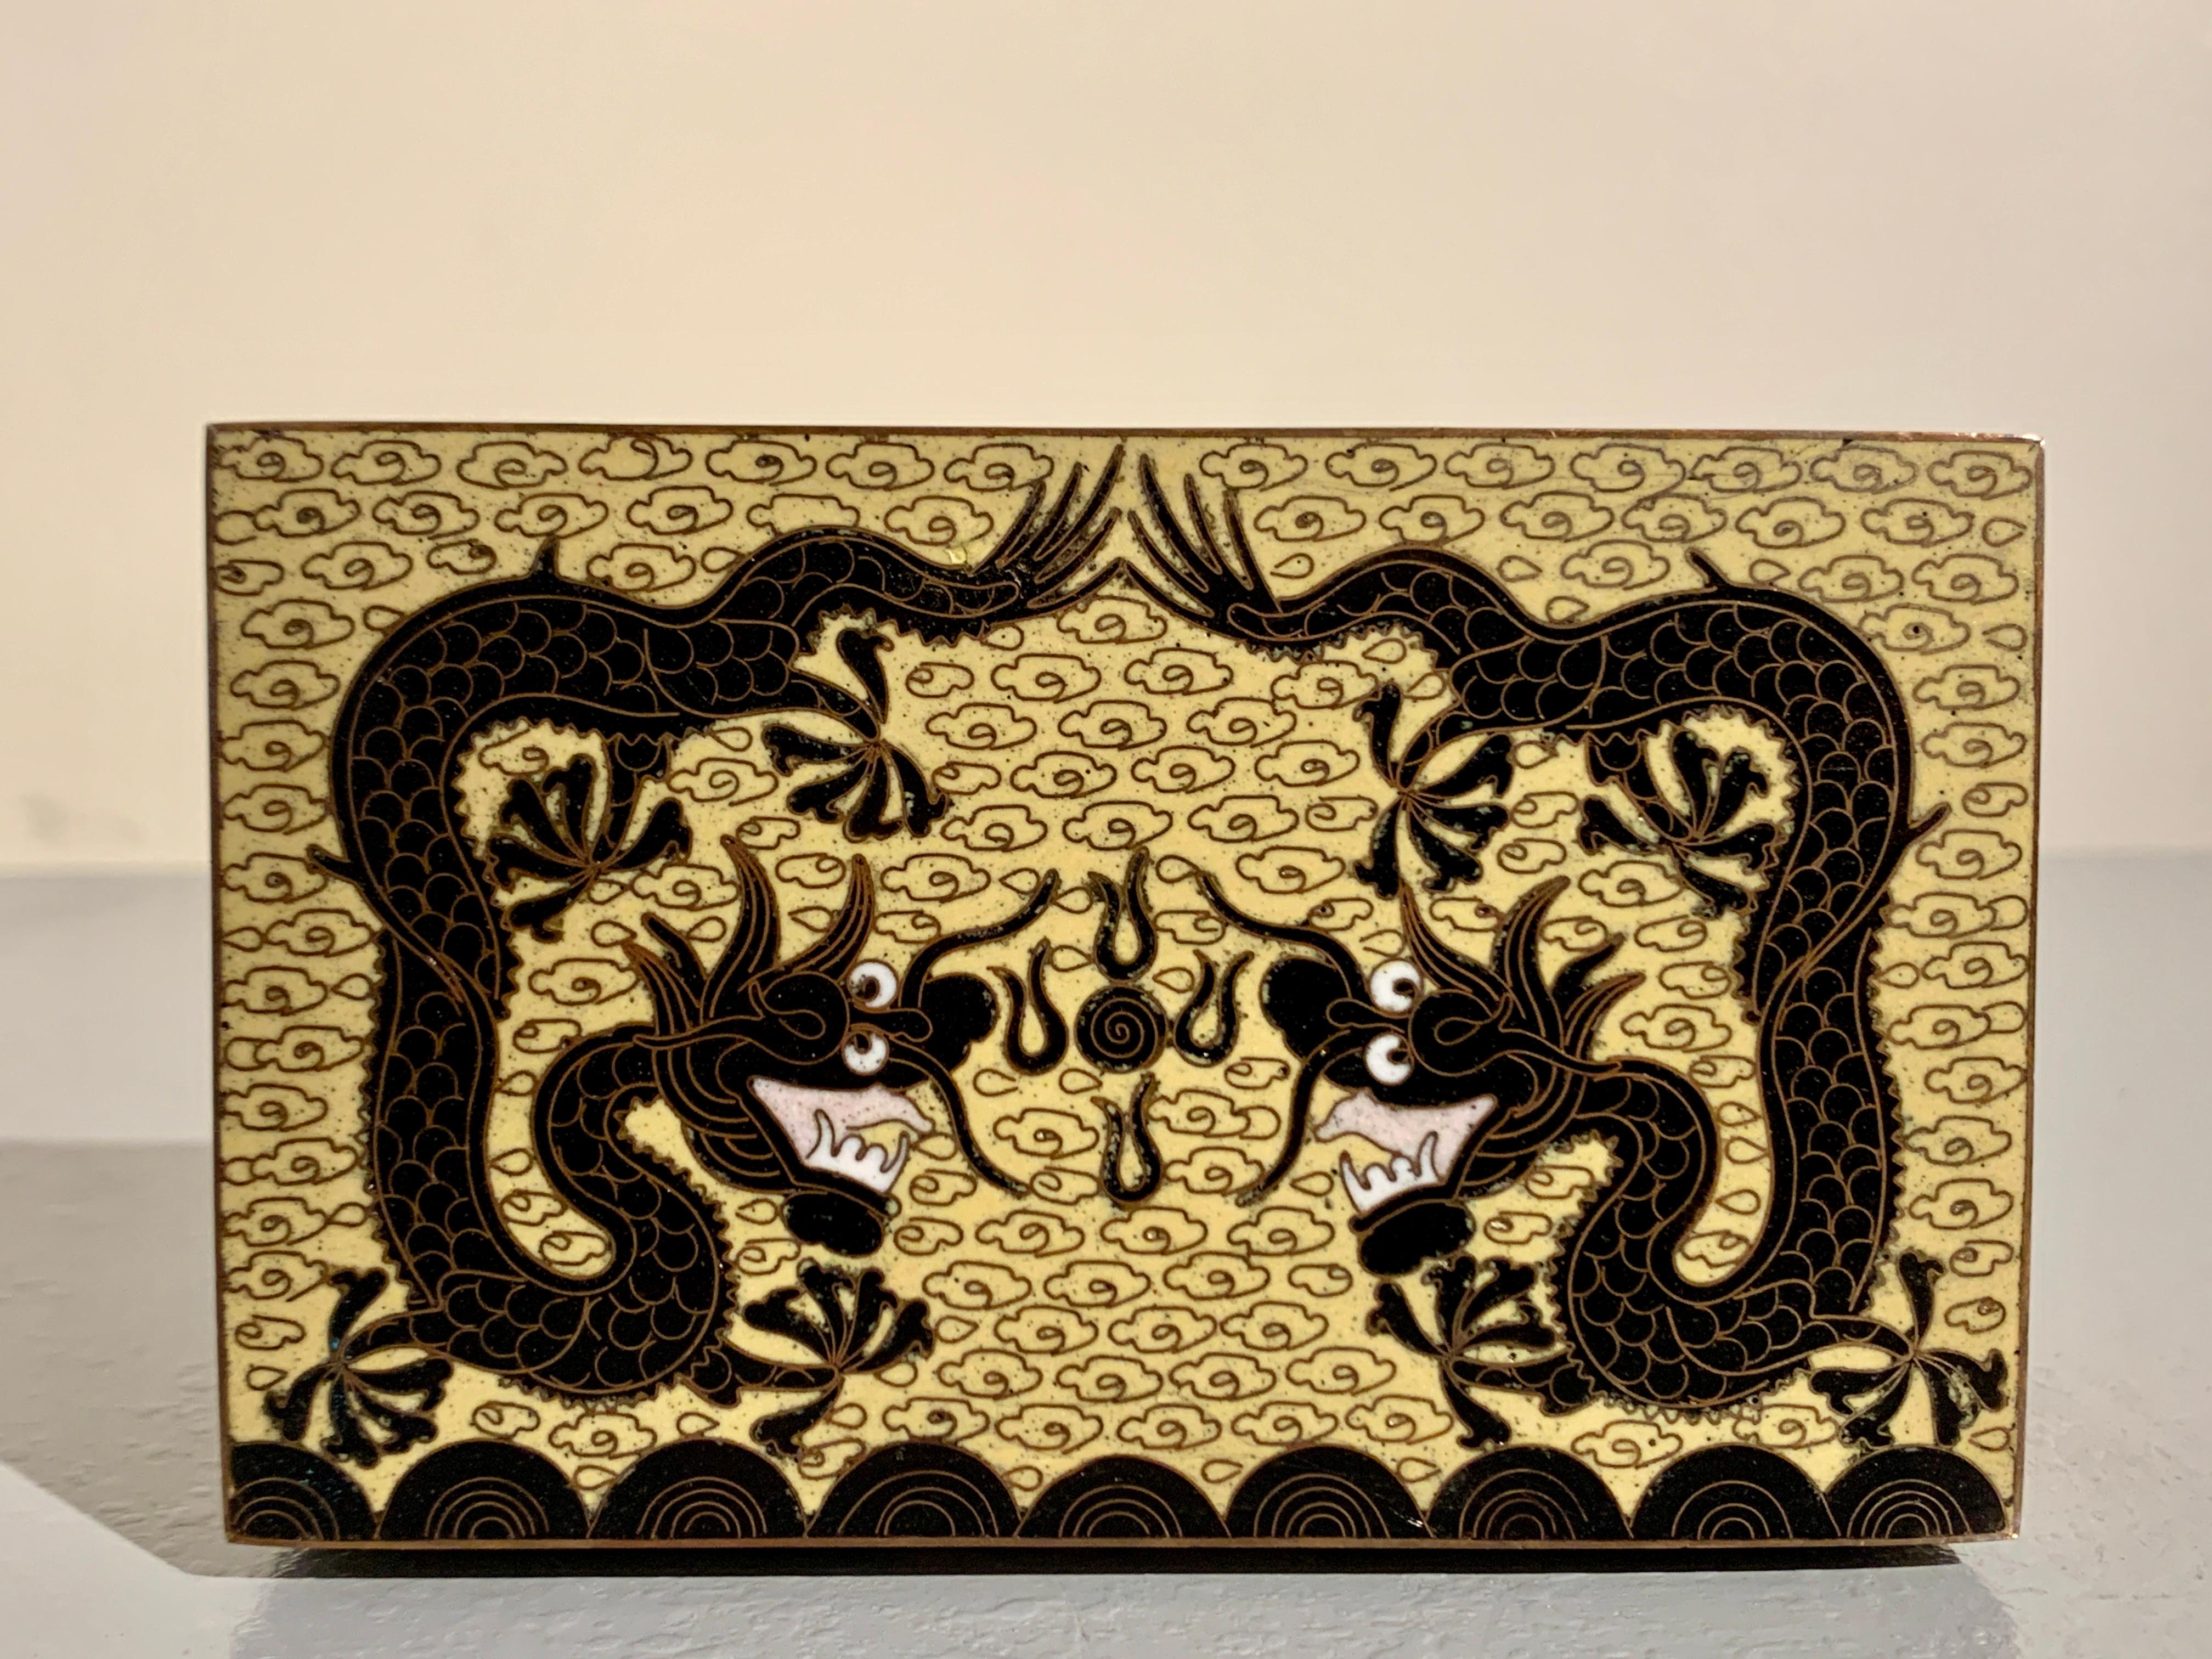 Charmante kleine chinesische Cloisonné-Schatulle mit Drachen, Republikzeit, um 1920, China.

Das kleine Kästchen steht auf vier Füßen und ist mit sich tummelnden Drachen aus schwarzem Cloisonné-Email auf gelbem Cloisonné-Grund gestaltet. Das Innere